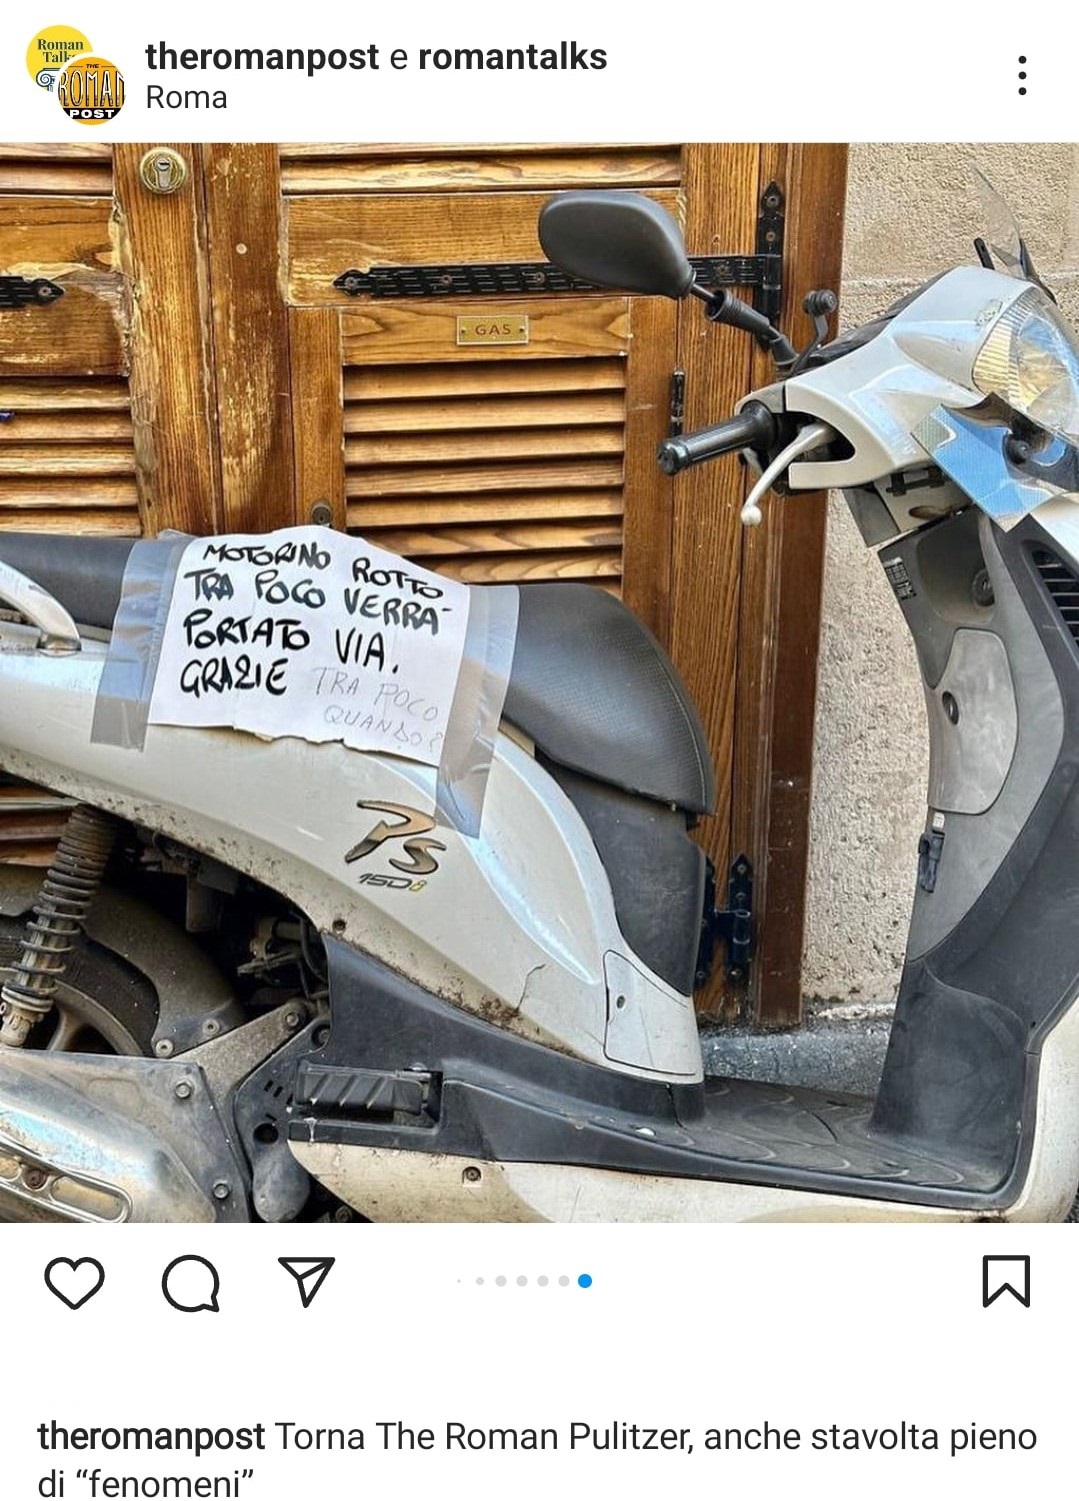 Il motorino abbandonato a Roma, con cartello. Fonte: theromanpost - Instagram